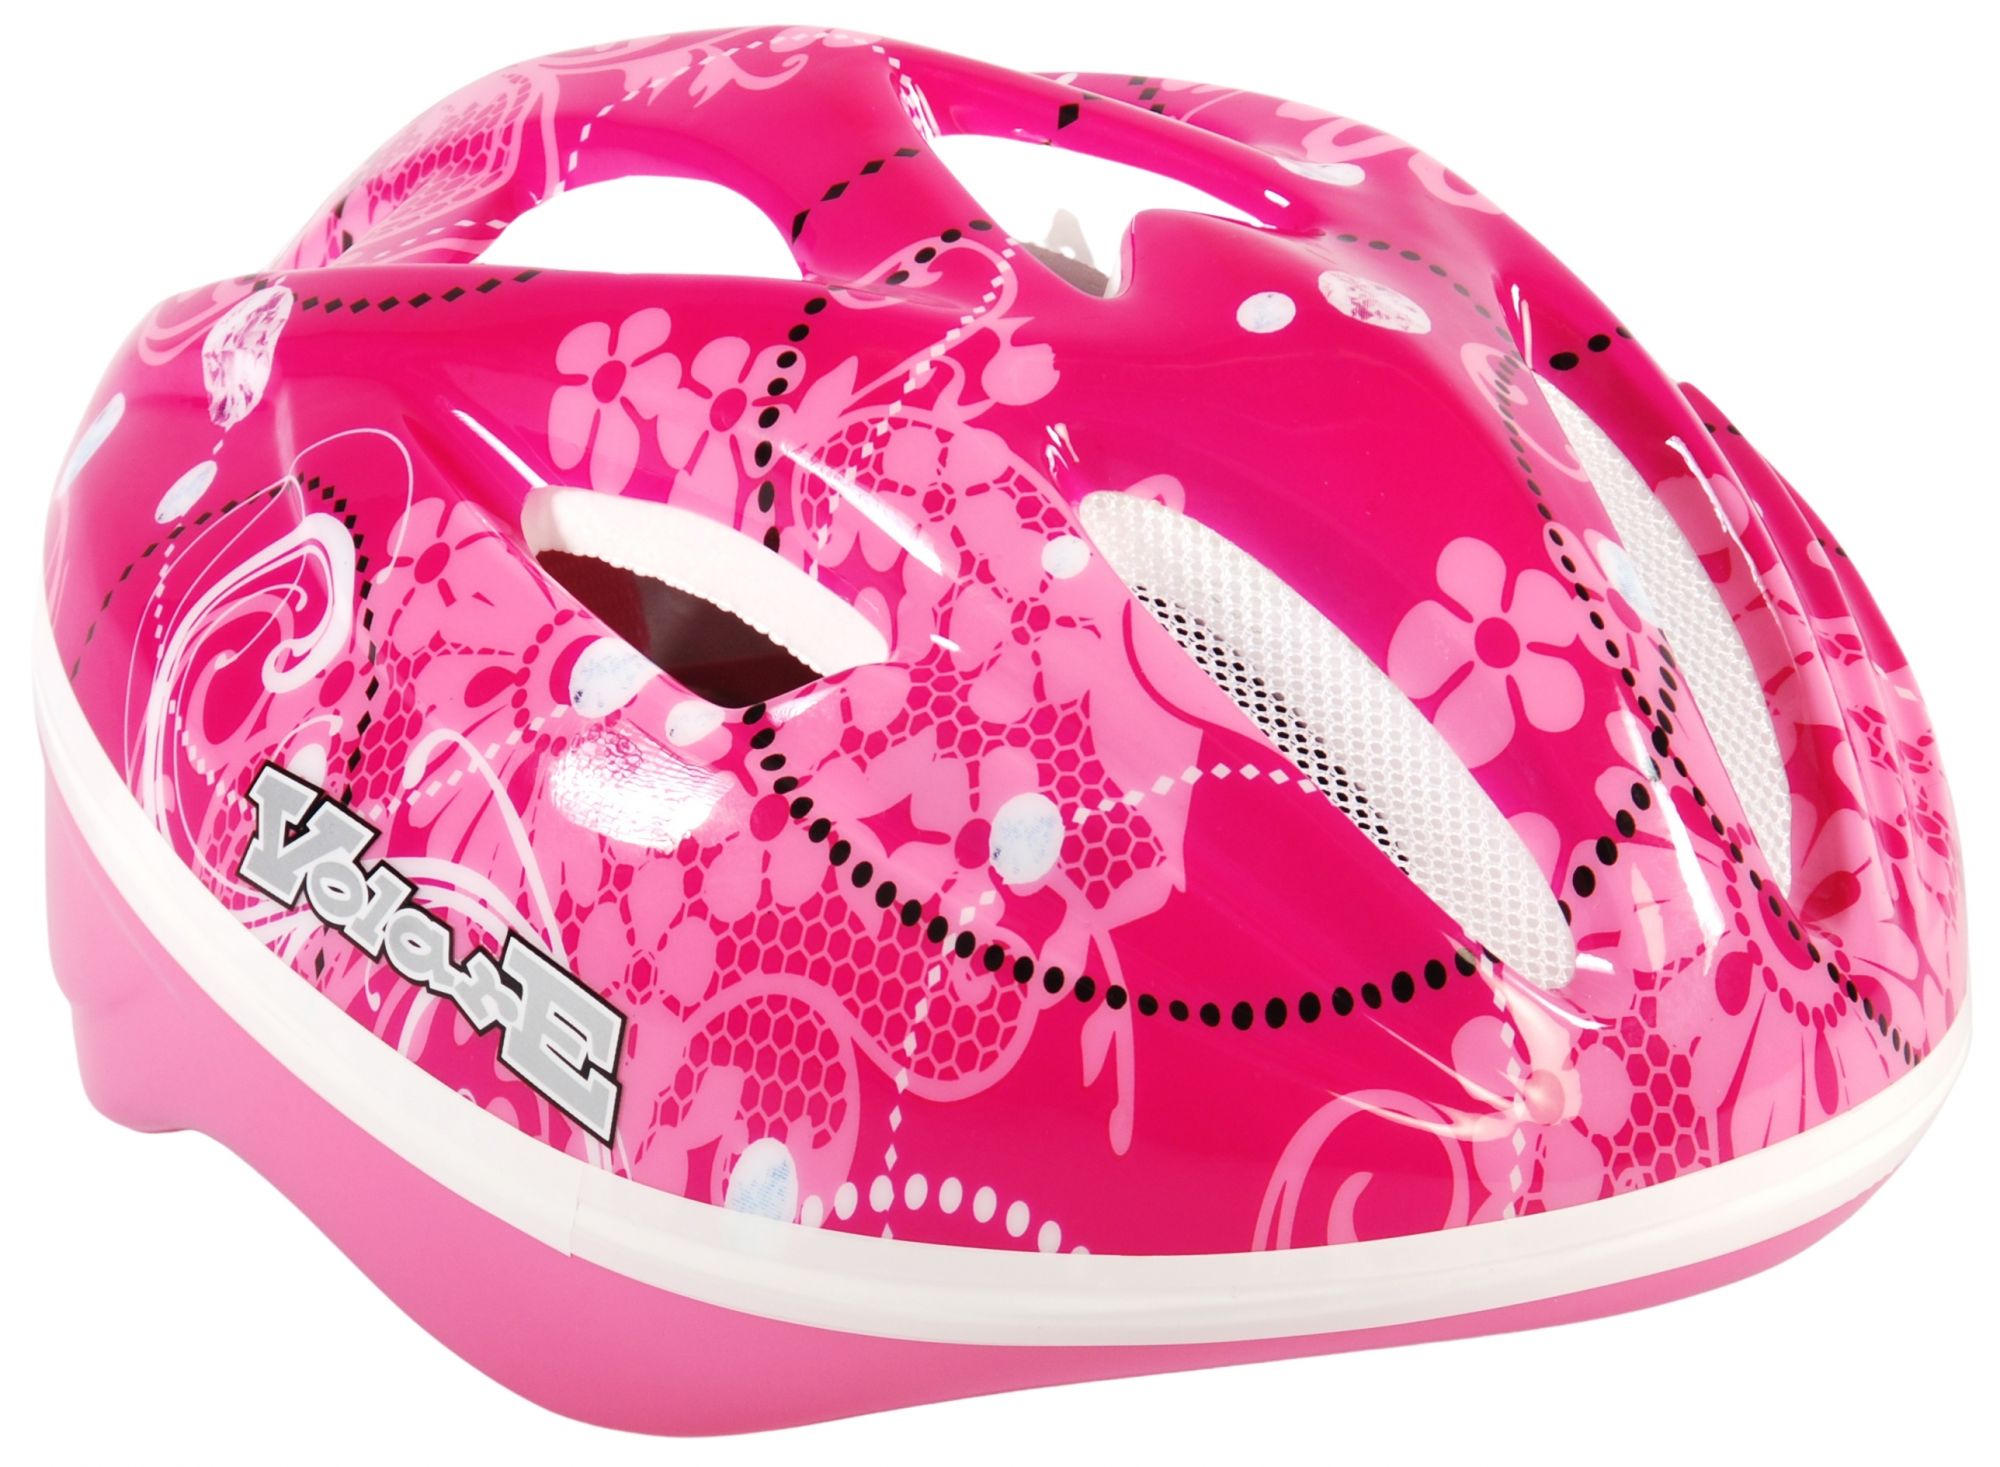 pink bicycle helmet